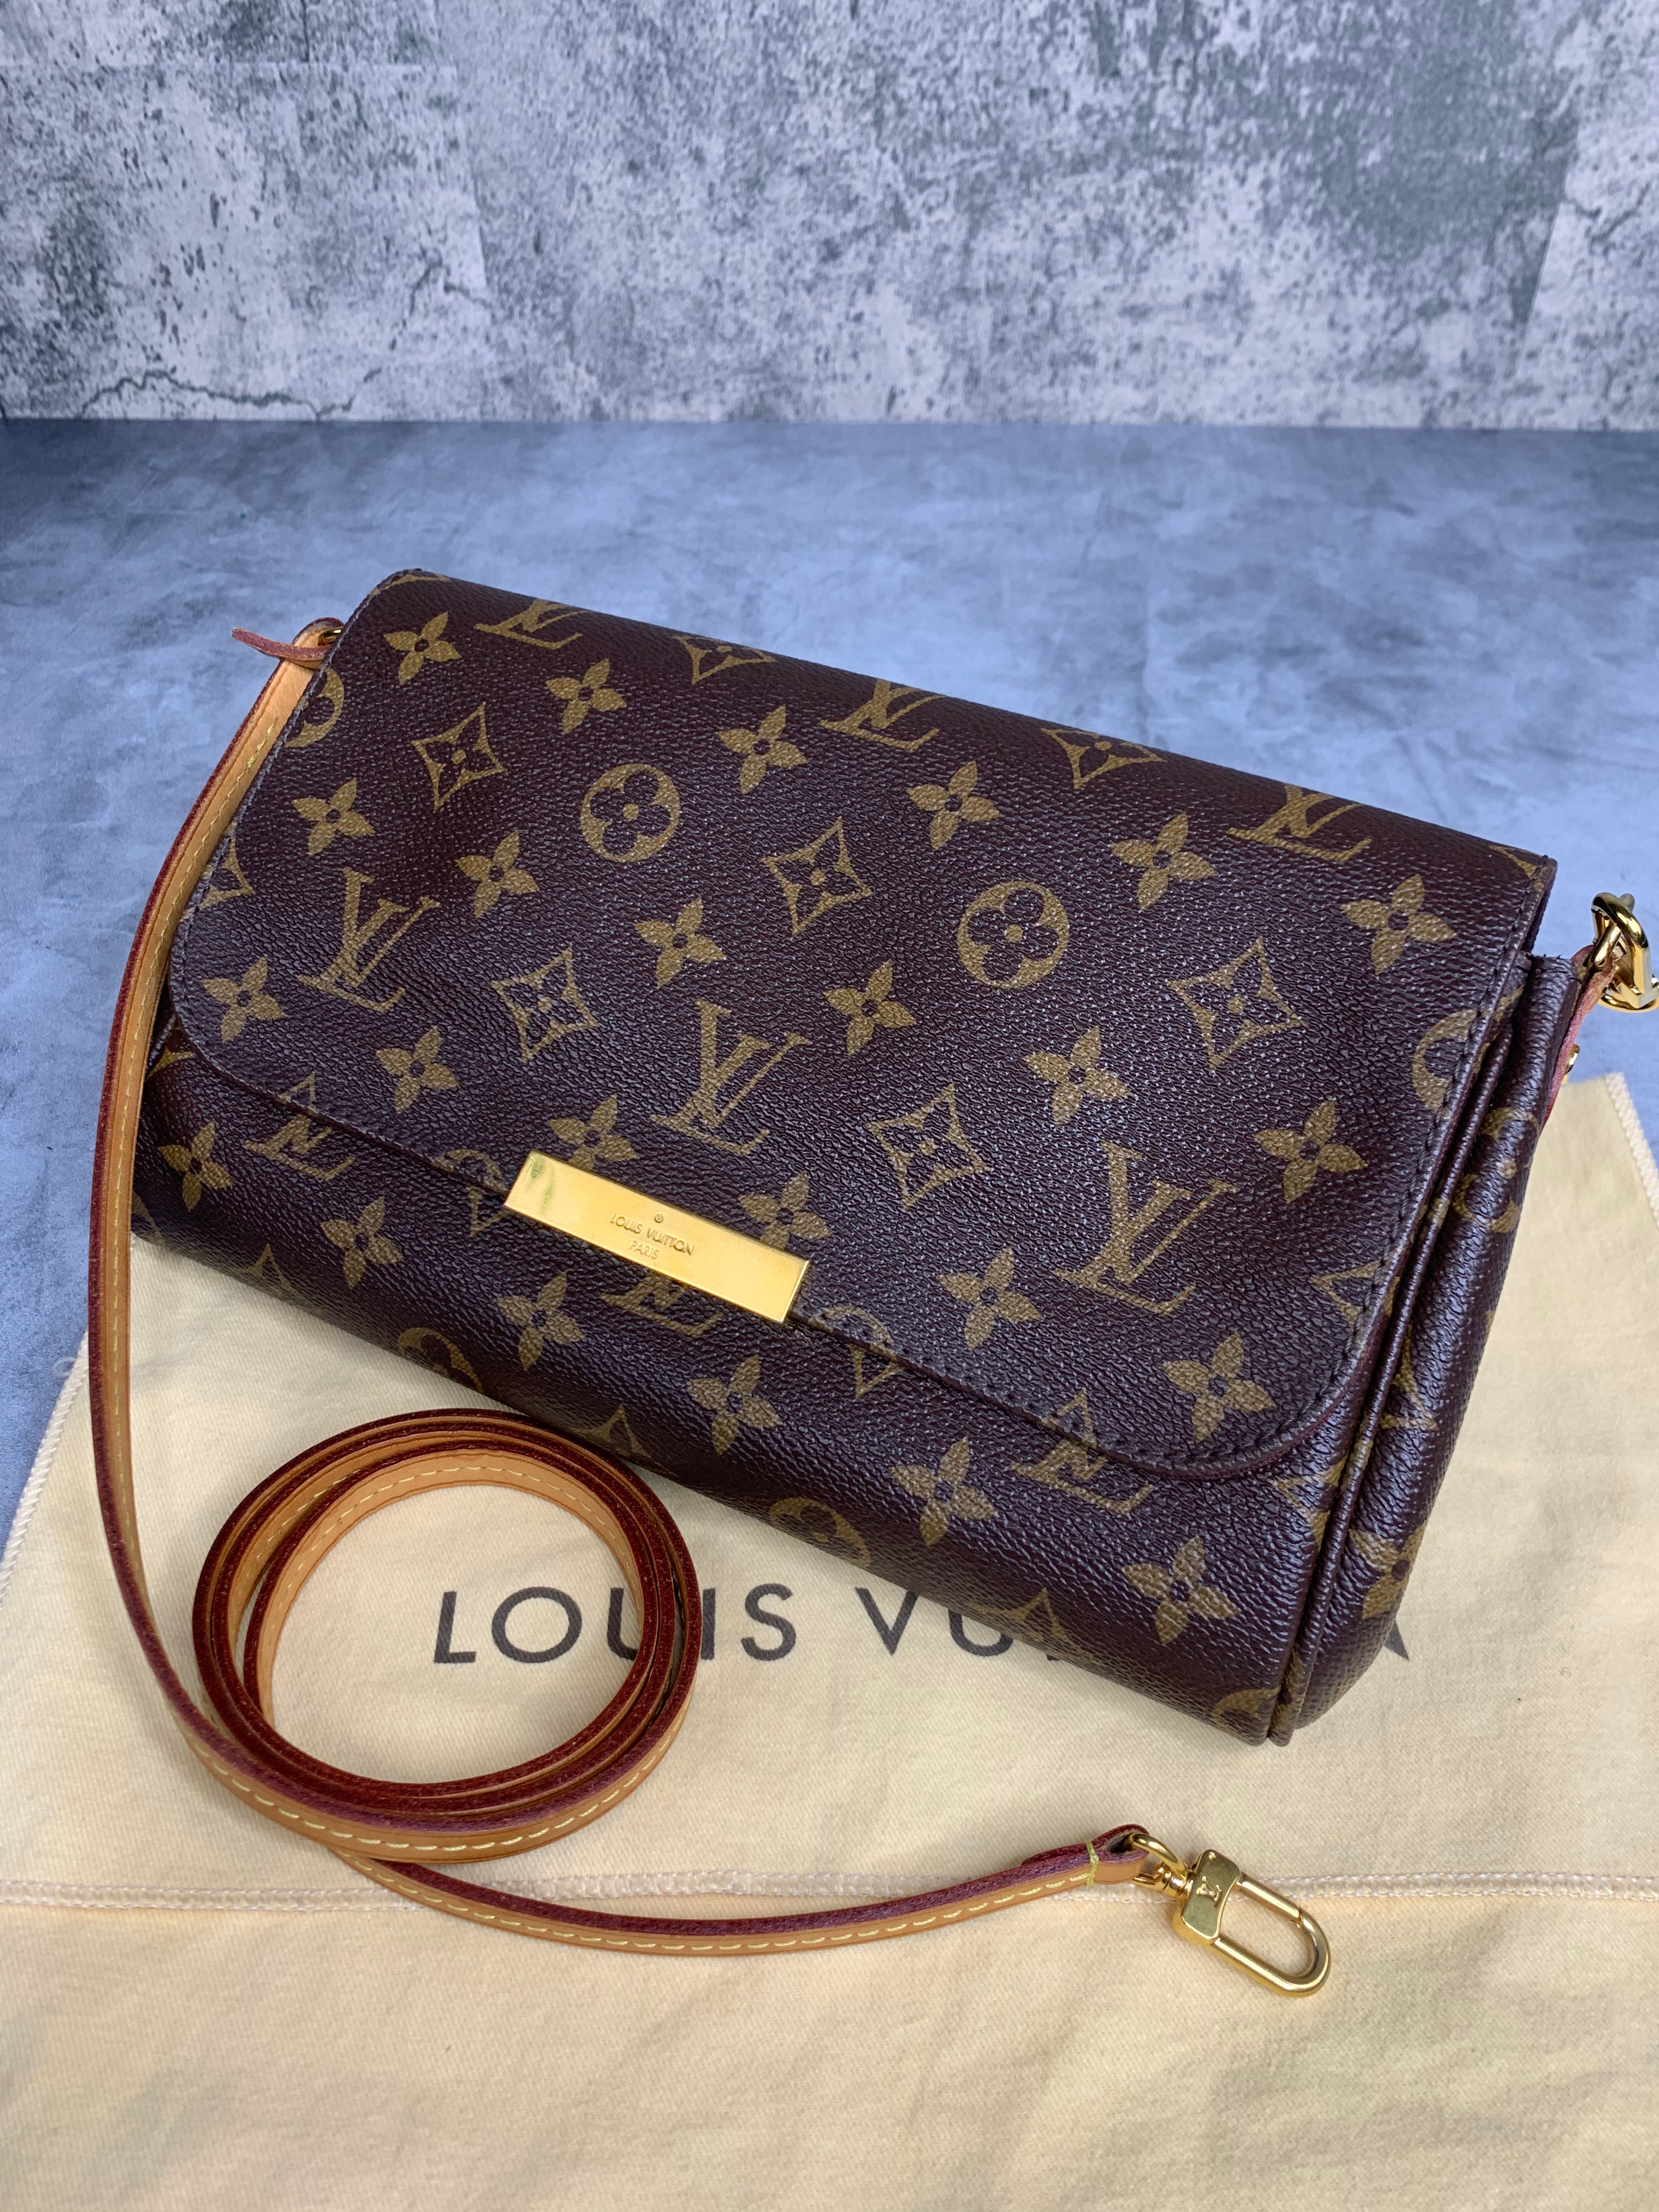 Favorite  Louis vuitton favorite, Louis vuitton favorite mm, Vintage louis  vuitton handbags